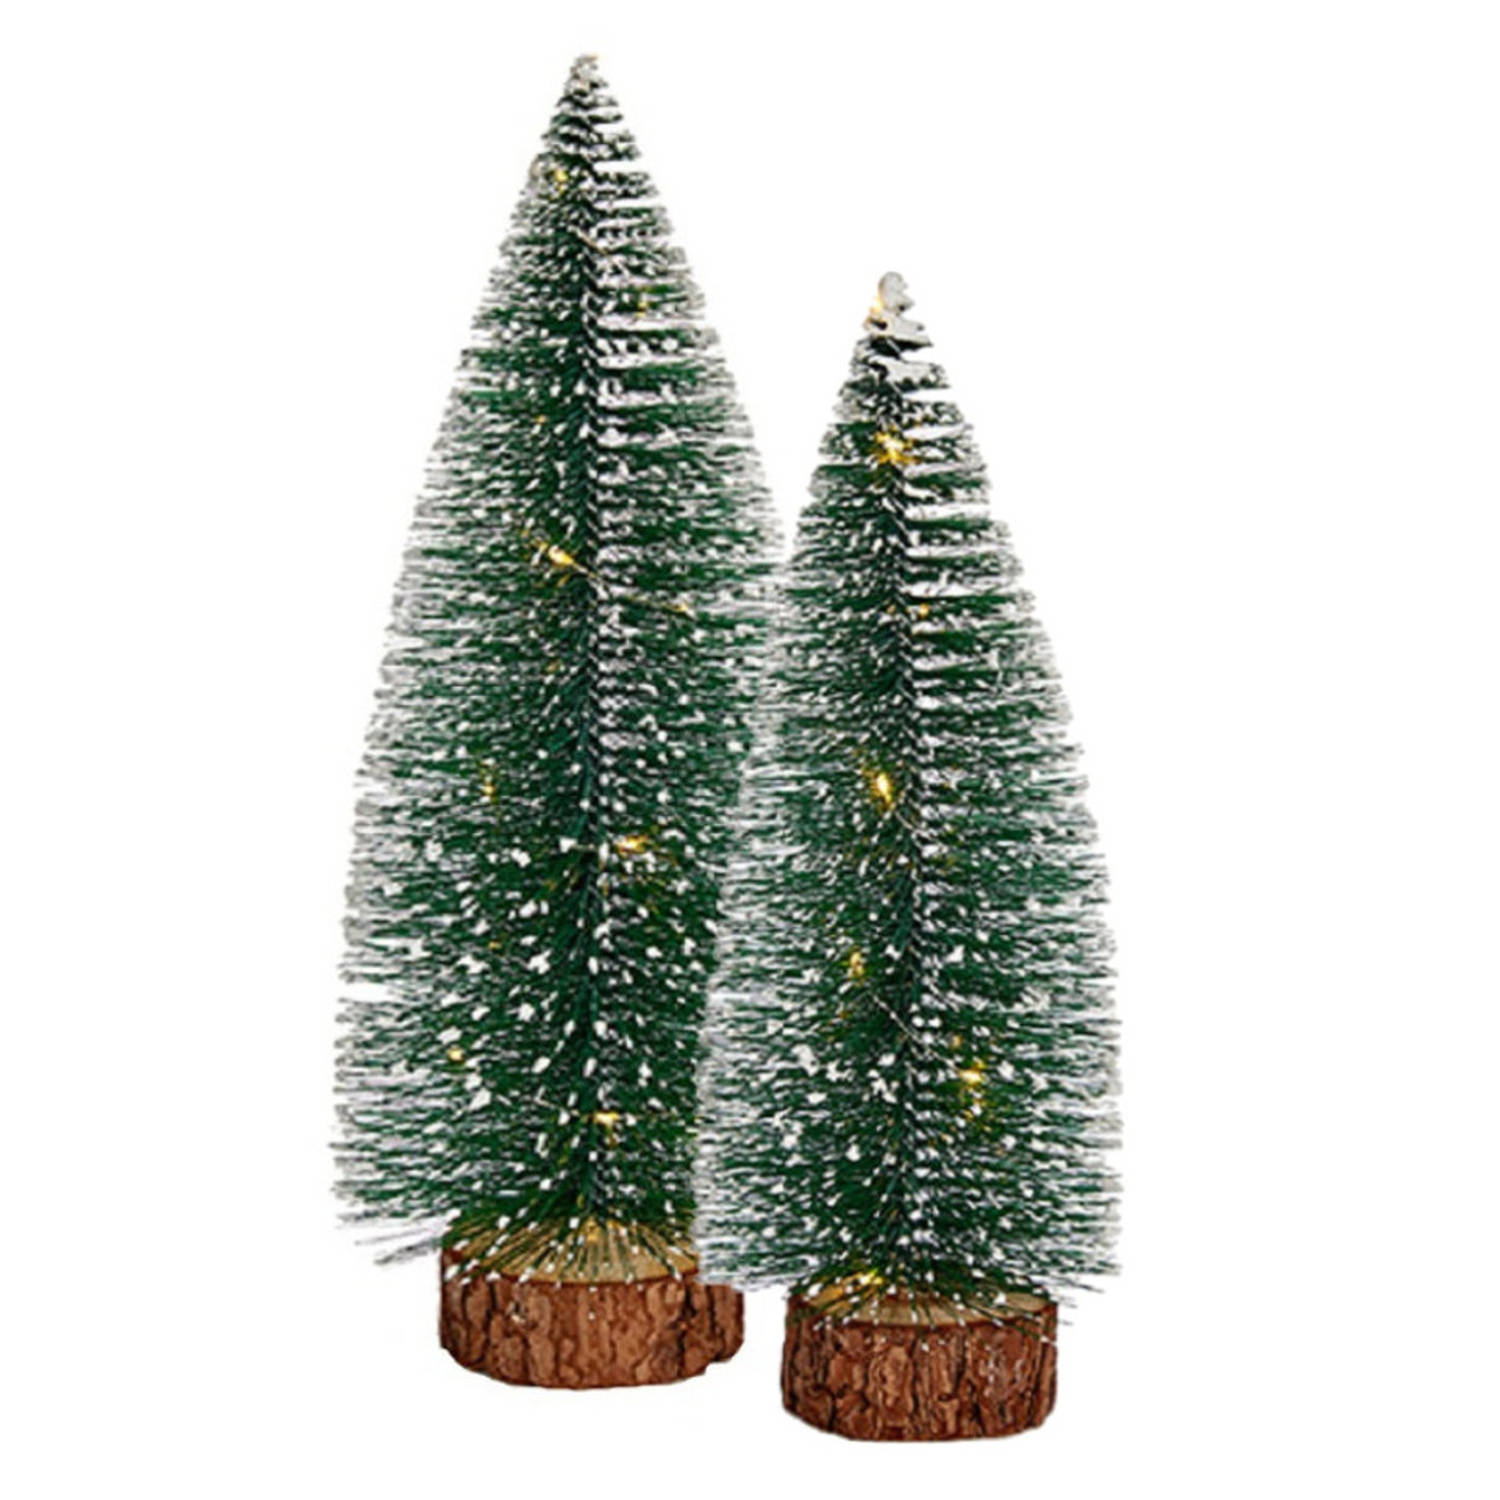 Kleine-mini decoratie kerstboompjes set van 2x st met licht 30-35 cm Kerstdorpen